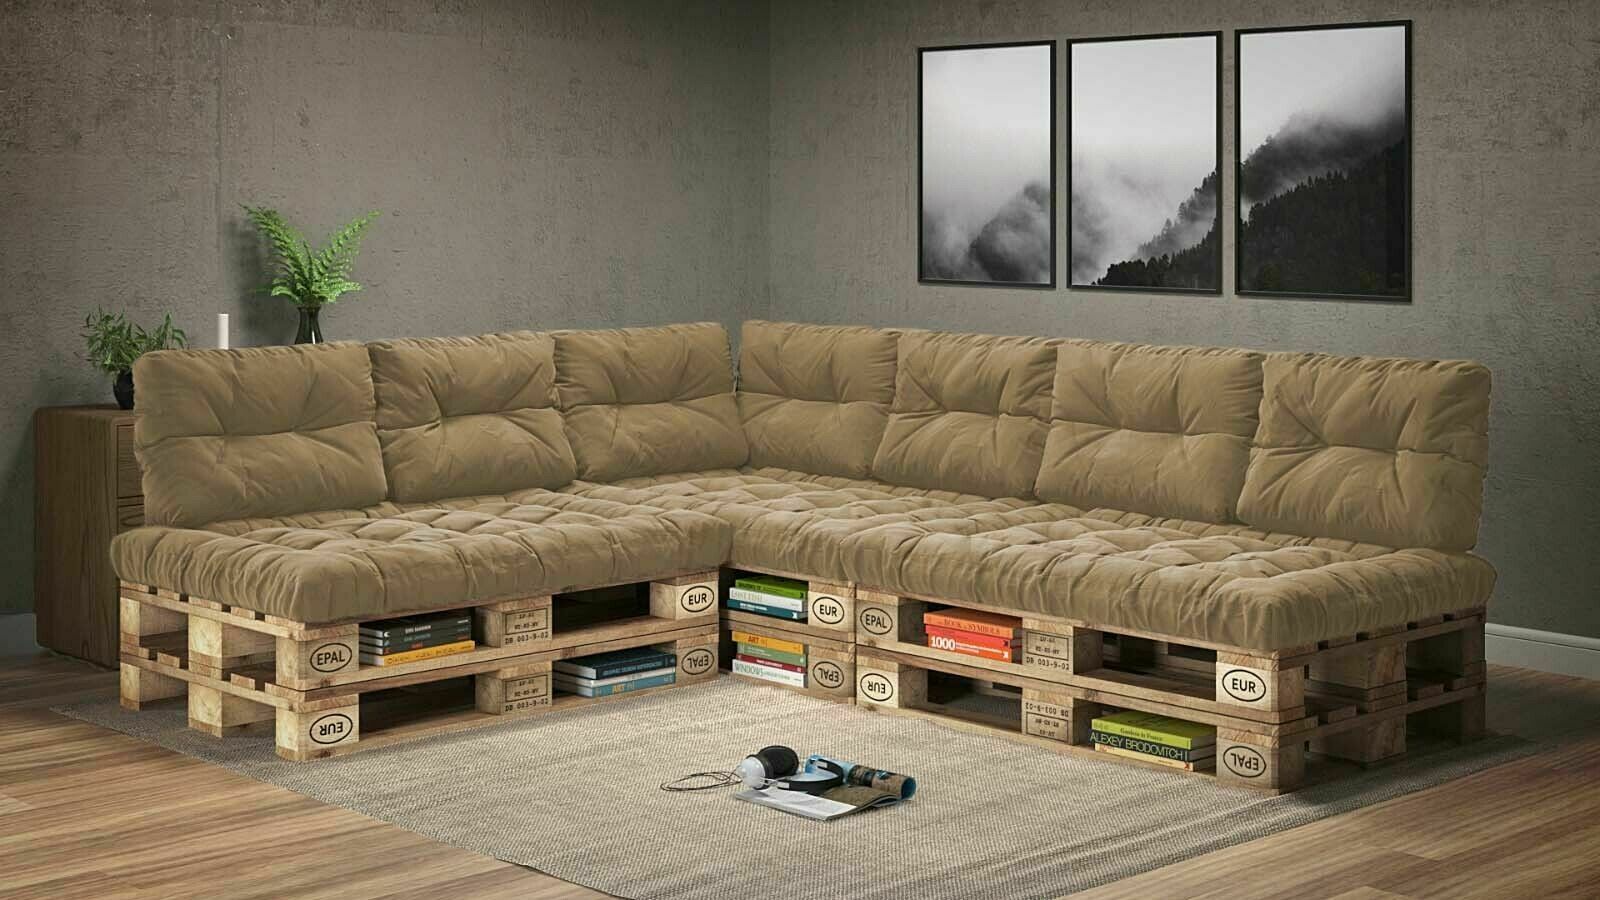 en.casa] 1x Cuscino sedile per divano paletta euro [grigio chiaro] cuscini  per palette supporto In/Outdoor mobili imbottiti